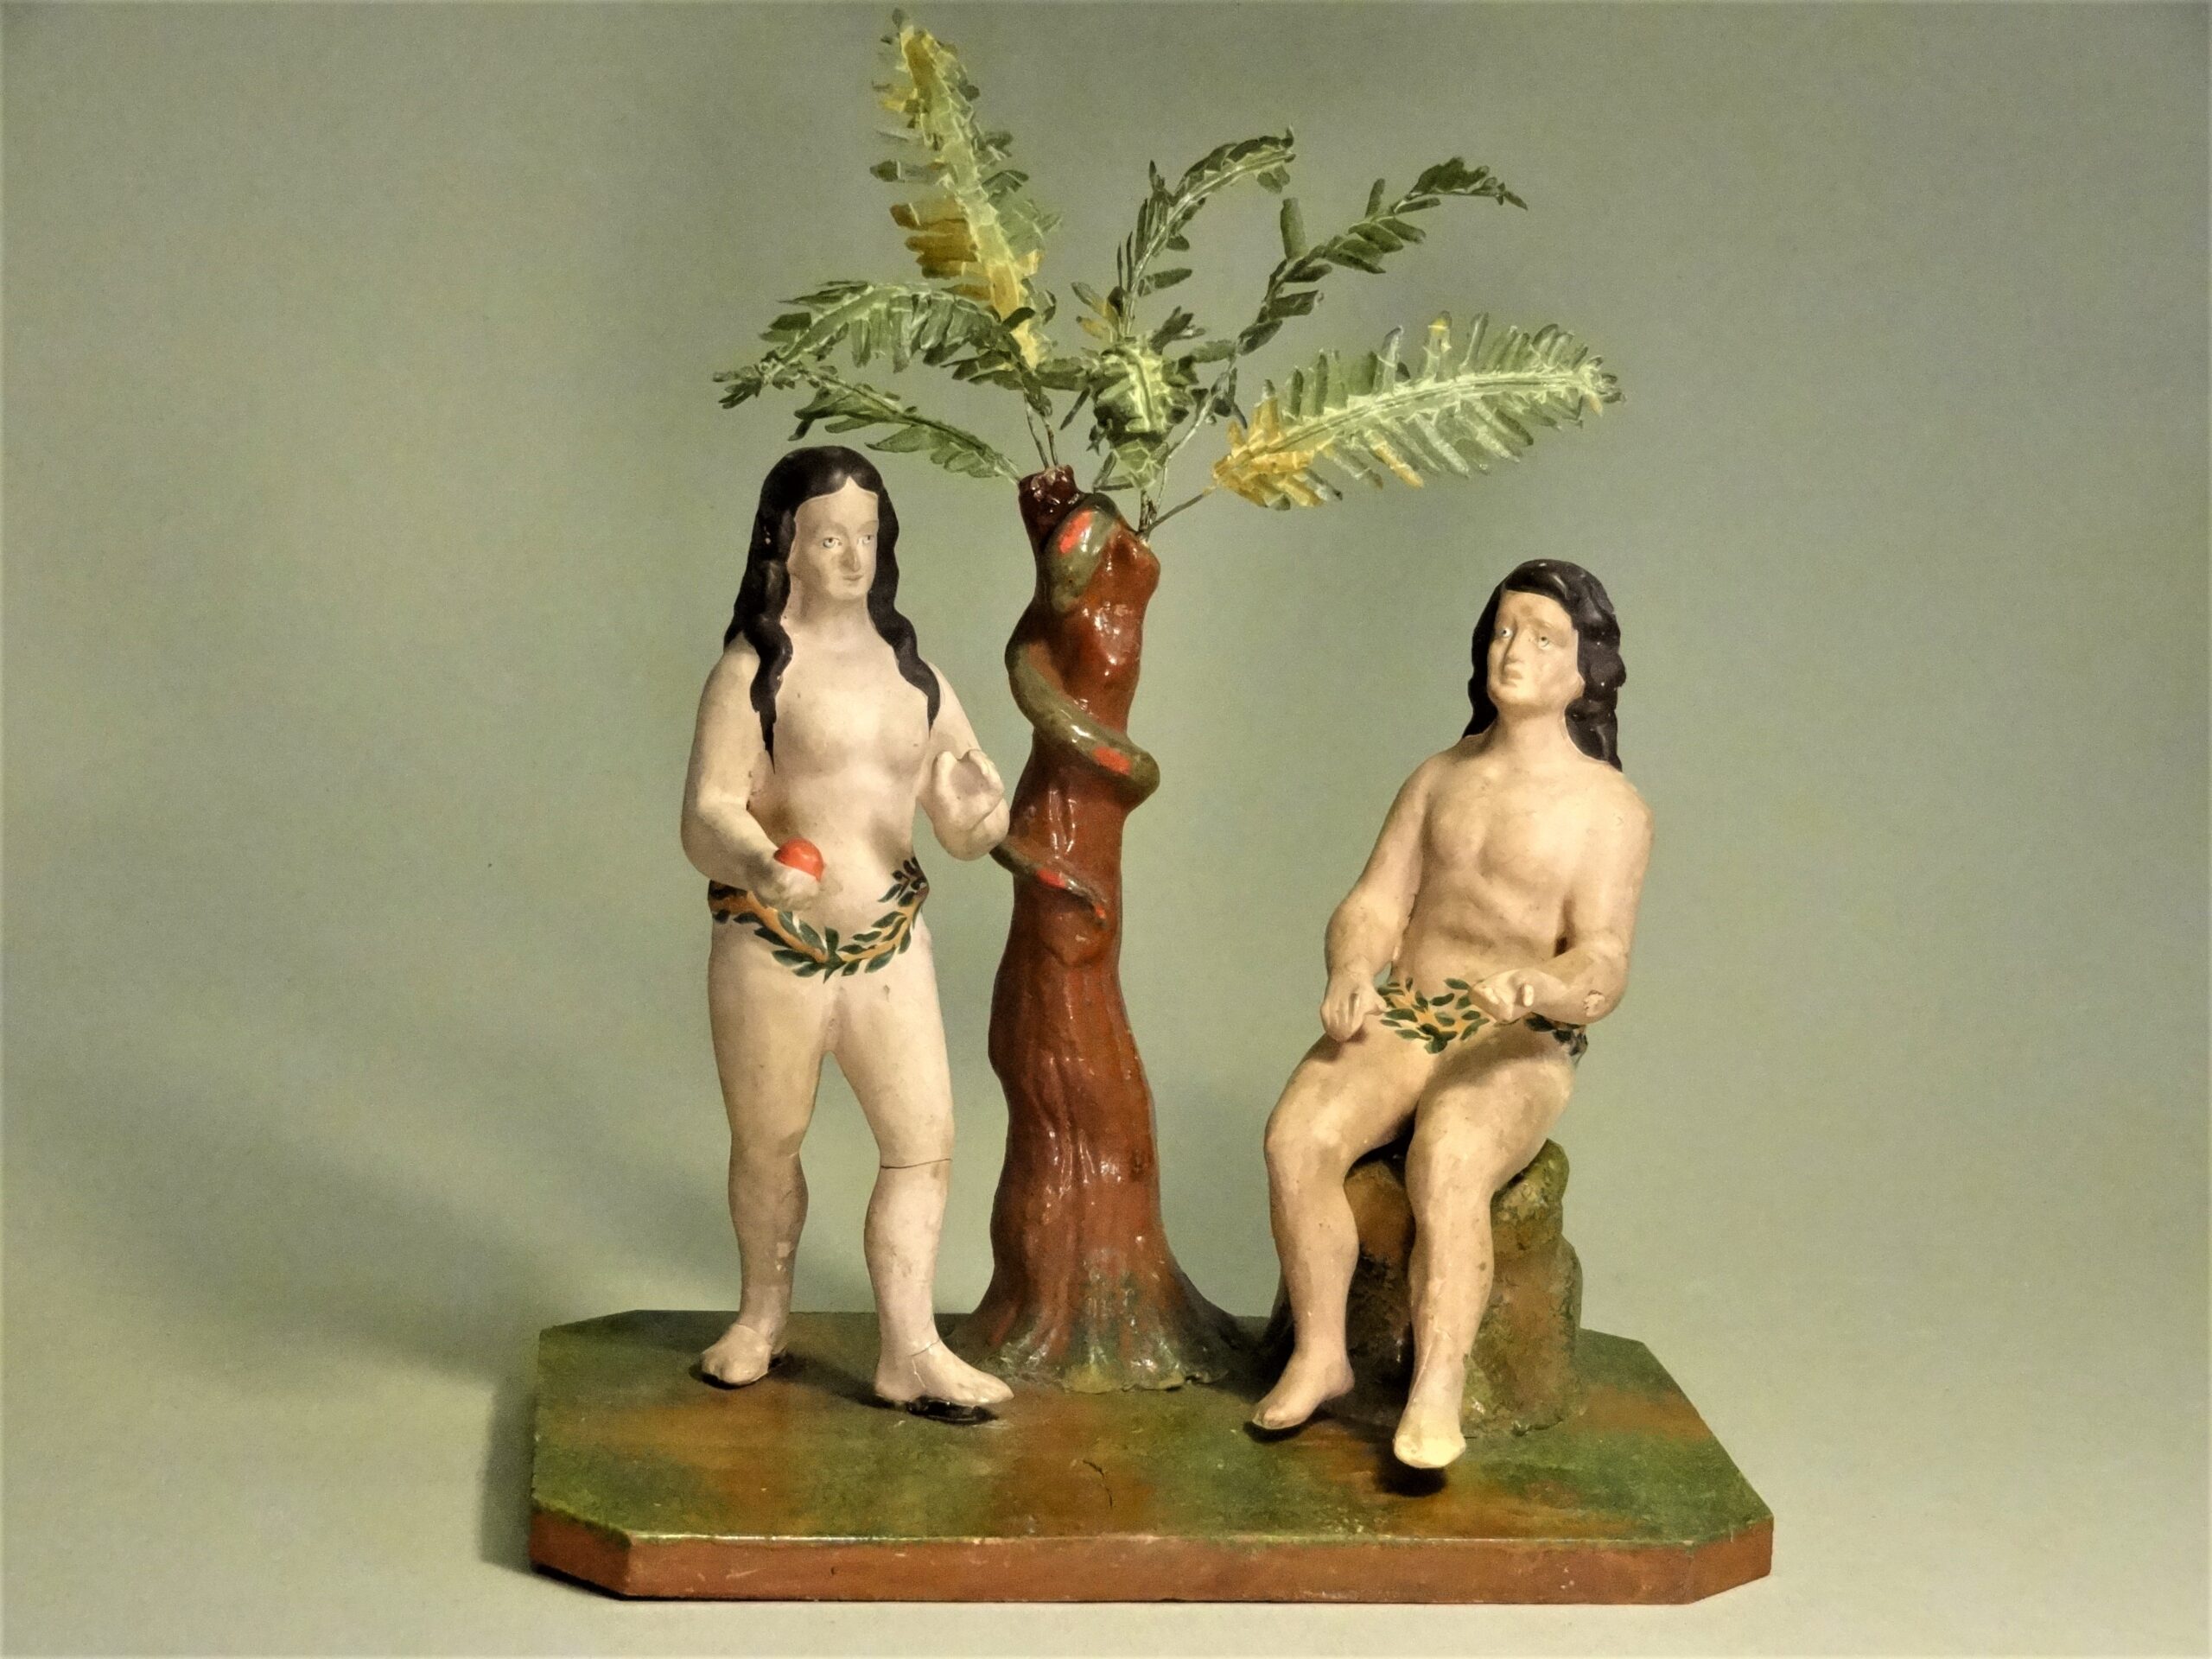 4 Adam und Eva, Hersteller_ Rudolf Apel, Oberlind, um 1900, abgebrochene und fehlende Teile wurden ergänzt, farbliche Retusche_